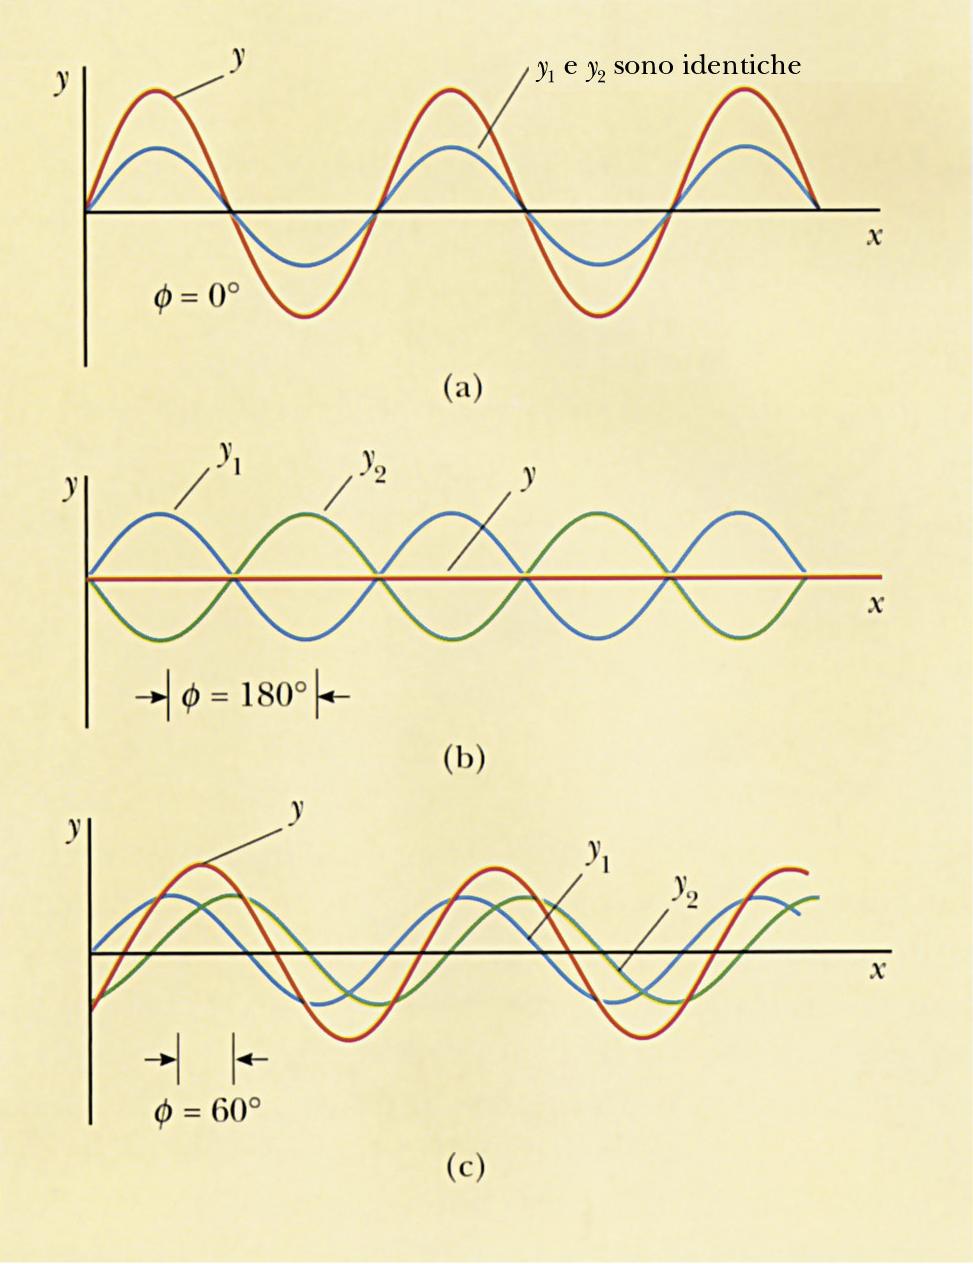 Sovrapposizione di onde sinusoidali Consideriamo due onde sinusoidali che si propagano verso destra con stessa f, λ e ampiezza ma con differenza di fase φ: y1 = Asen(kx ωt) y 2 = Asen(kx ωt + φ ) La